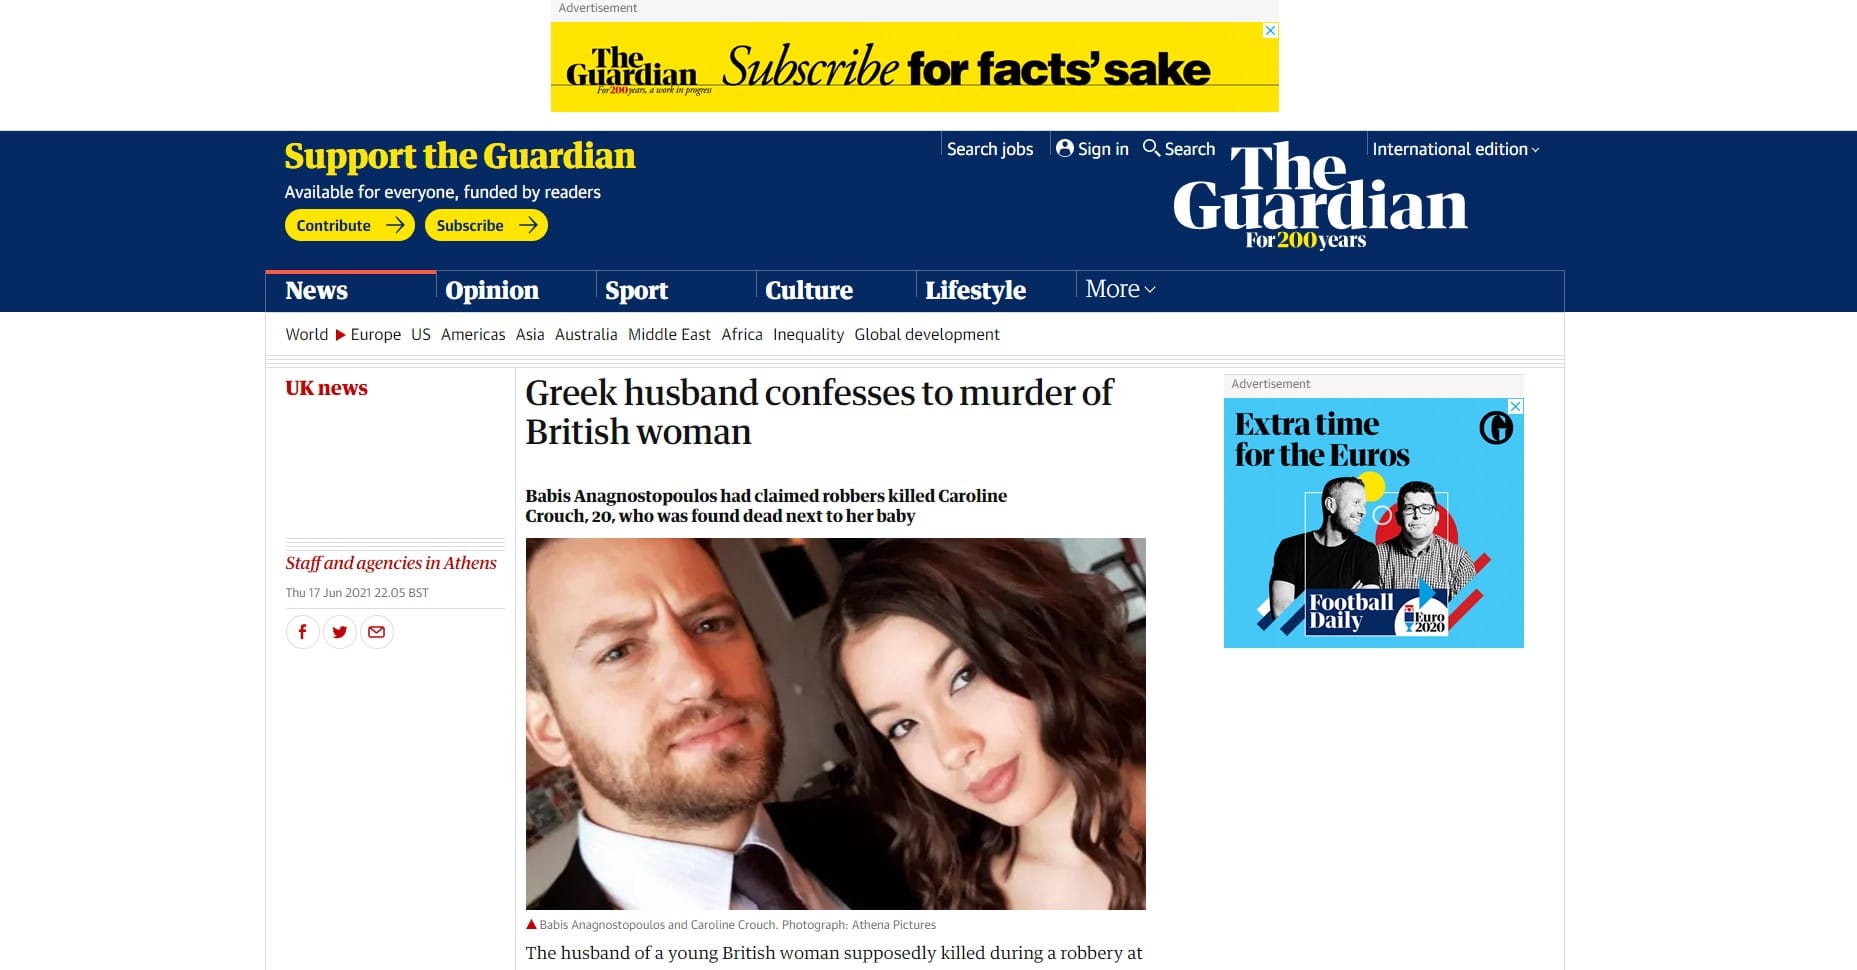 Σύσσωμος ο Βρετανικός τύπος ασχολείται και αυτός απο χτες το απόγευμα με την υπόθεση της δολοφονίας της 20χρονης Βρετανής Caroline Croutch